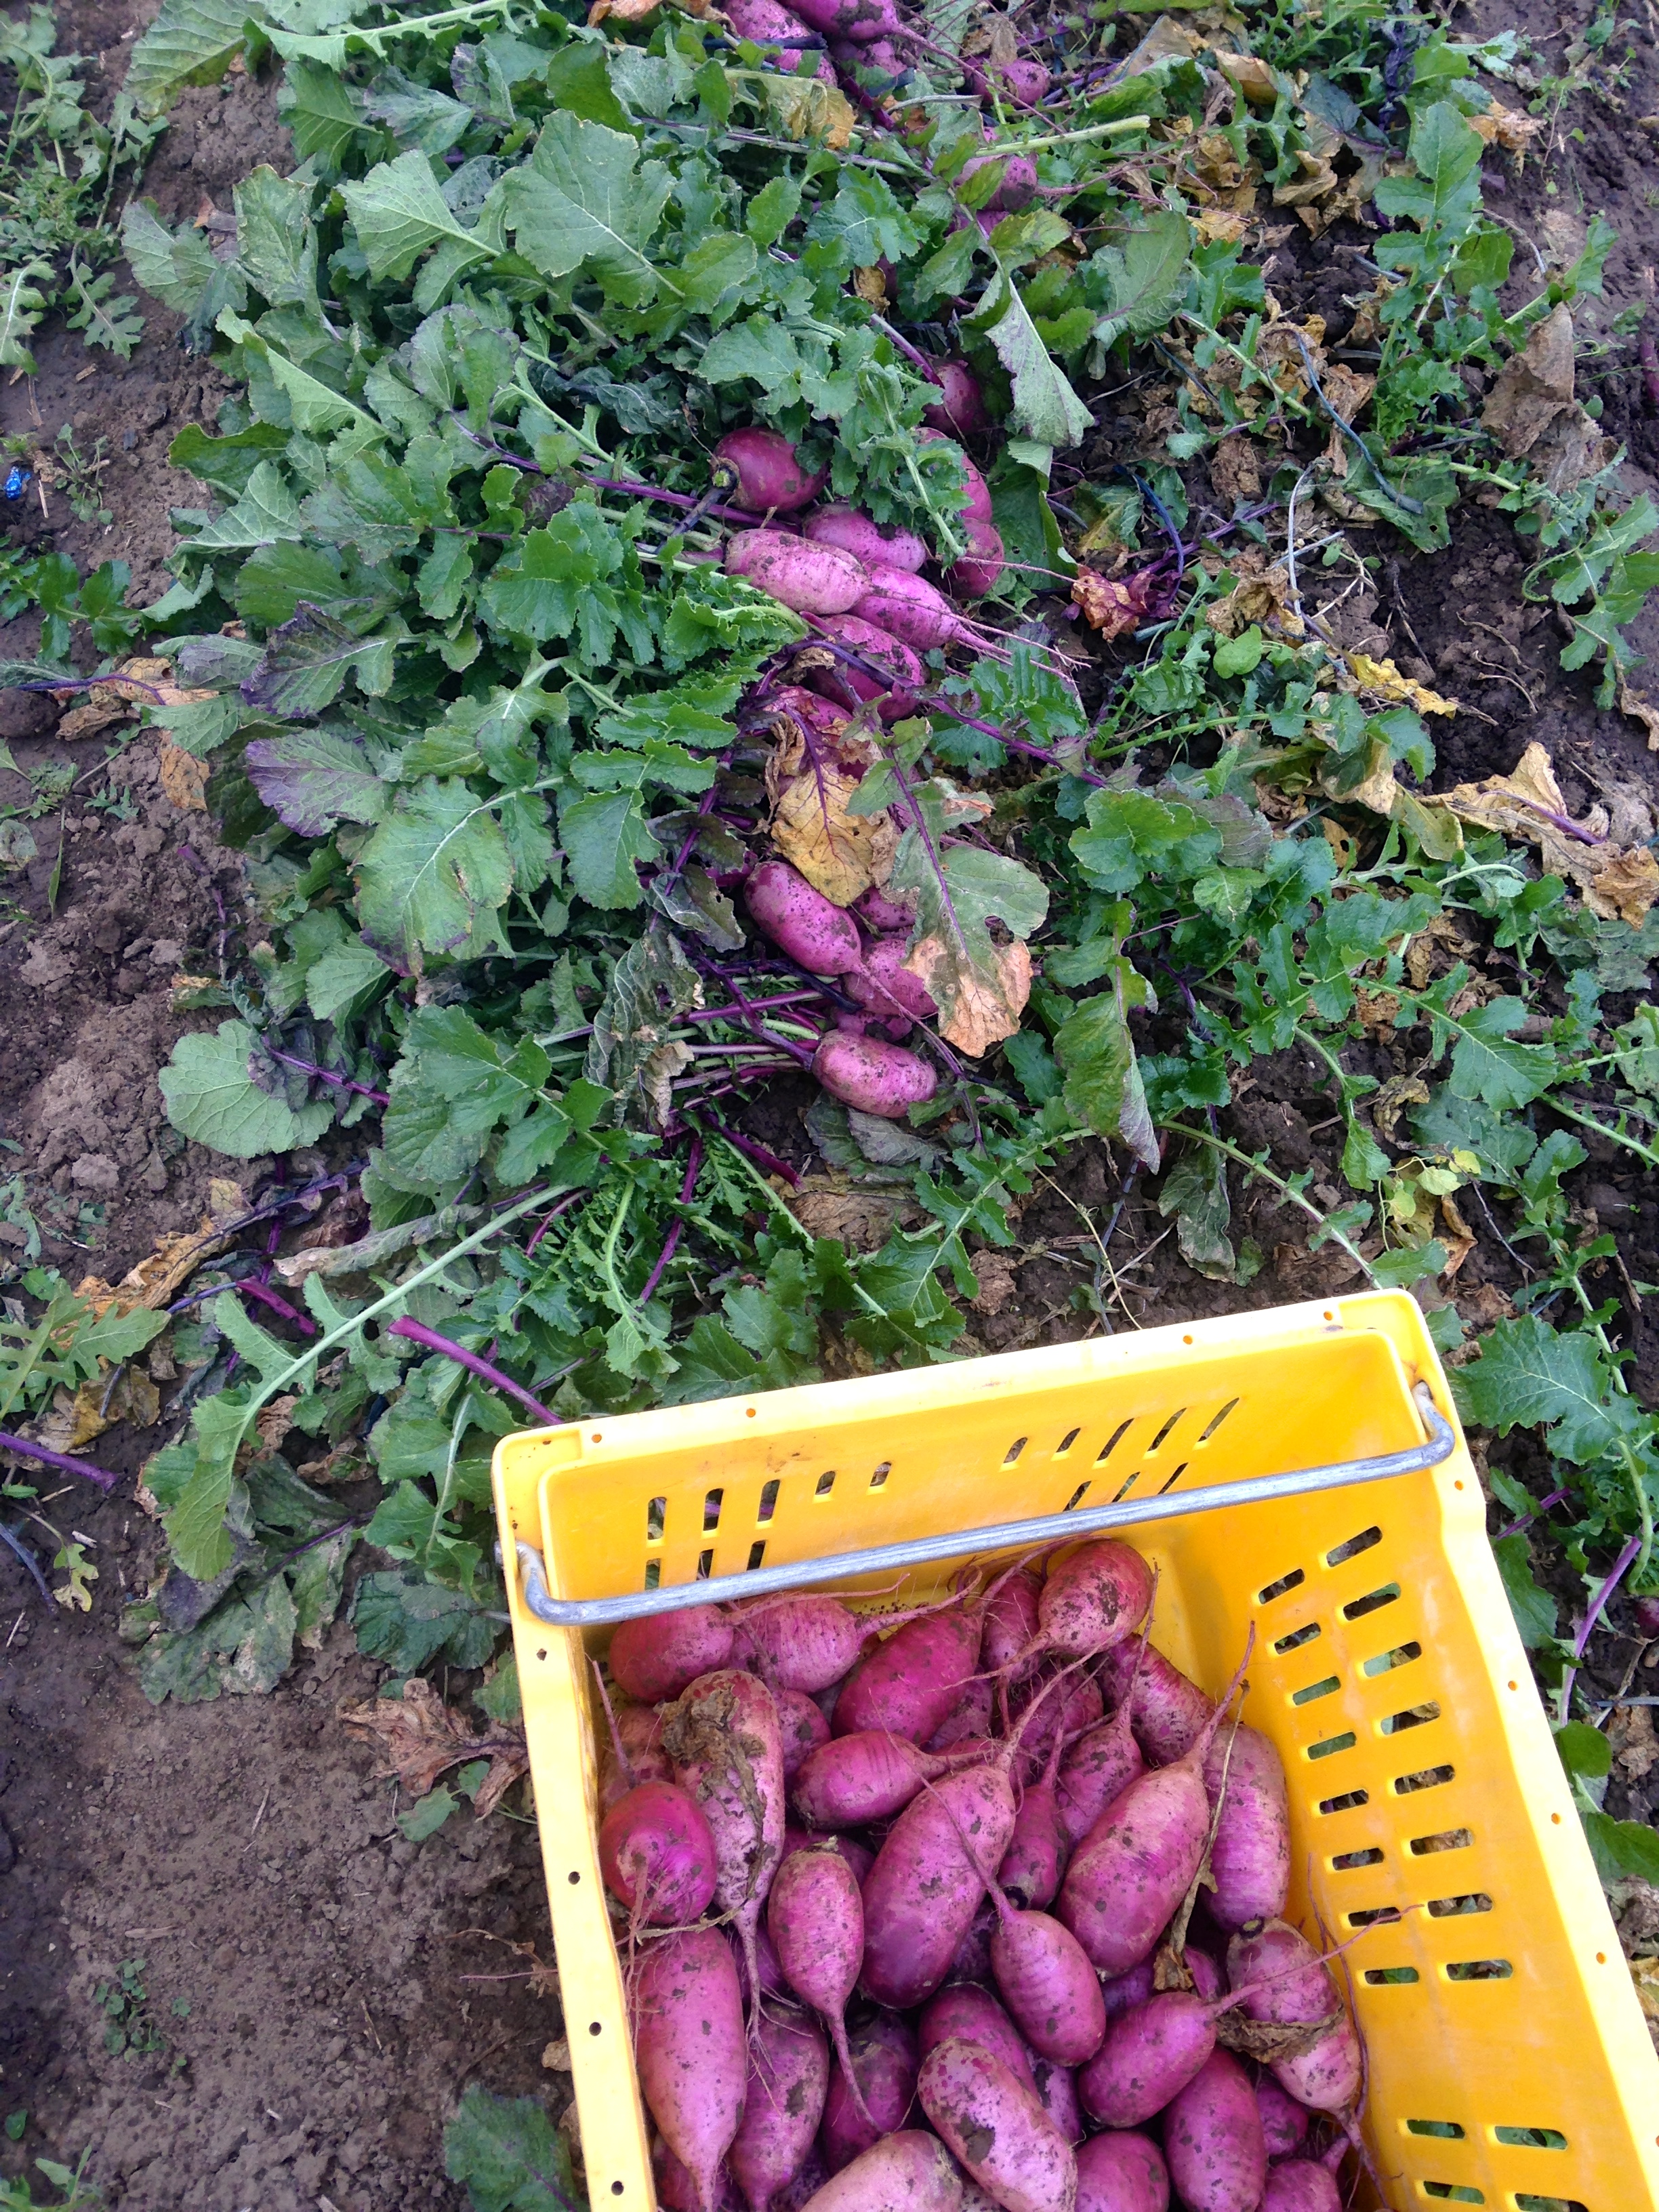 Harvesting Purple Daikon